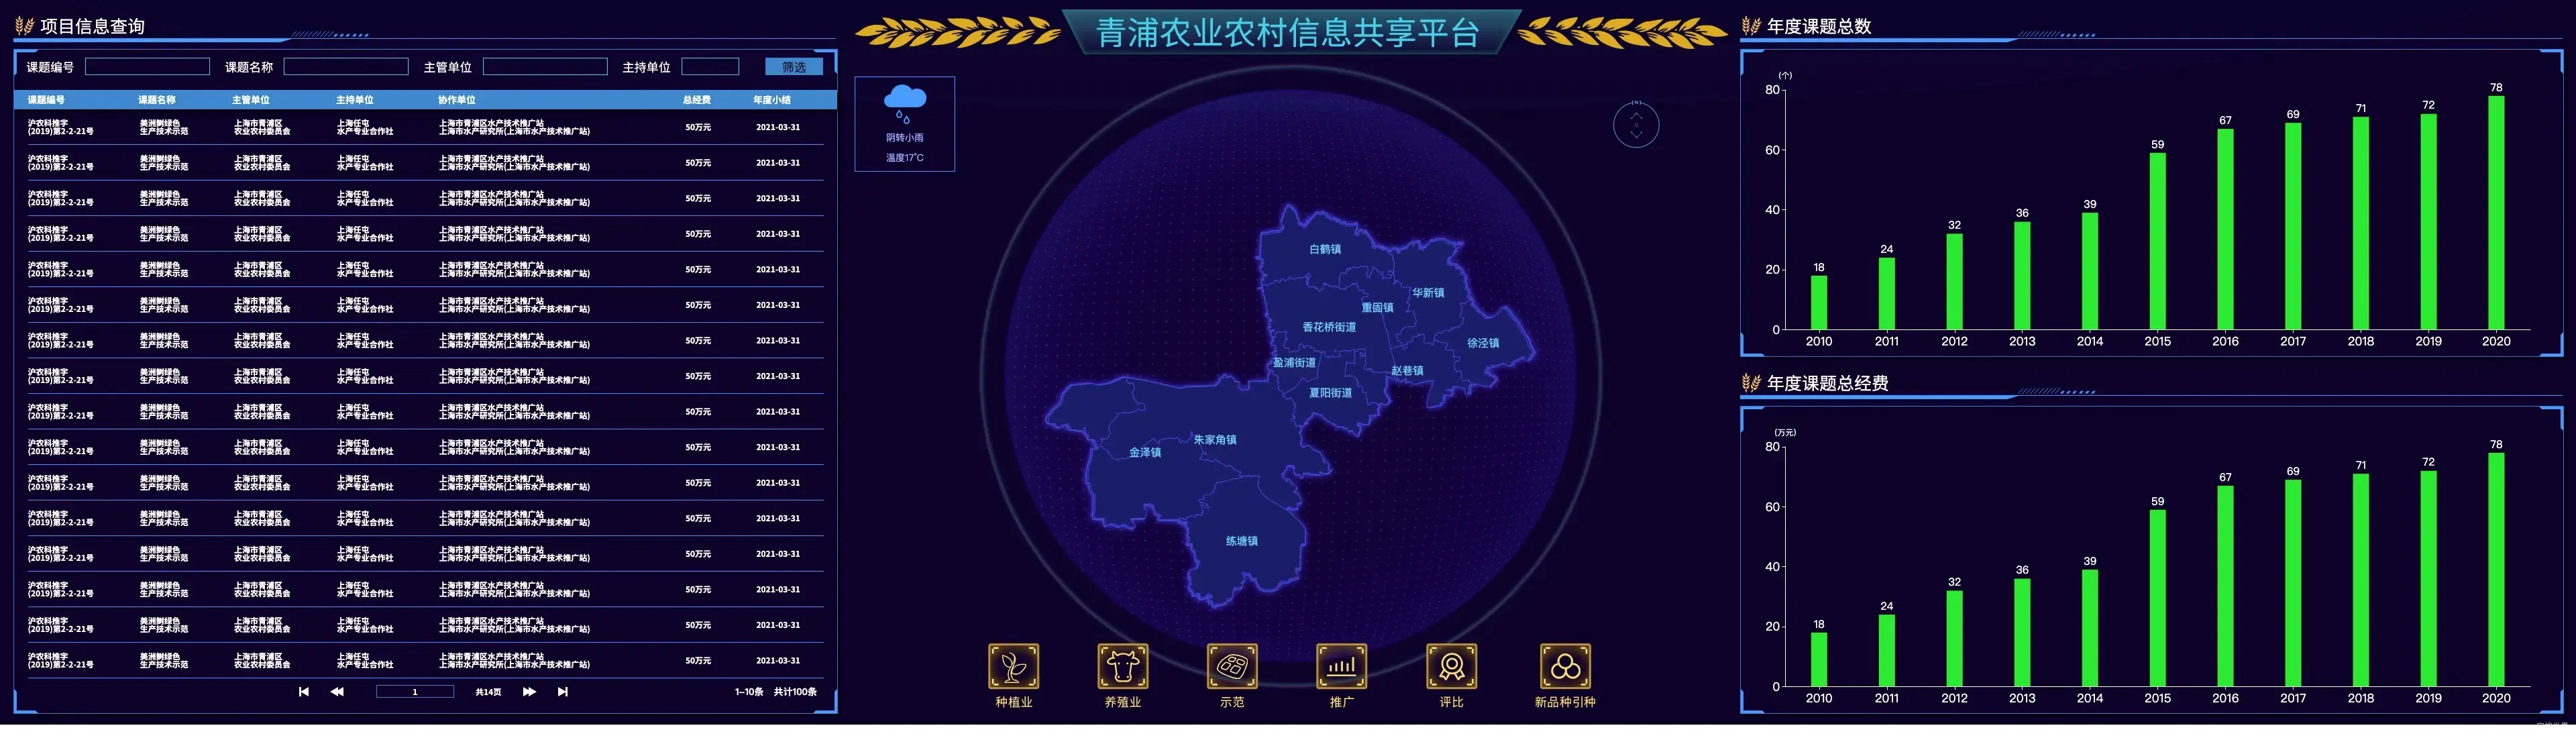 青浦农业农村信息共享平台-科技兴农